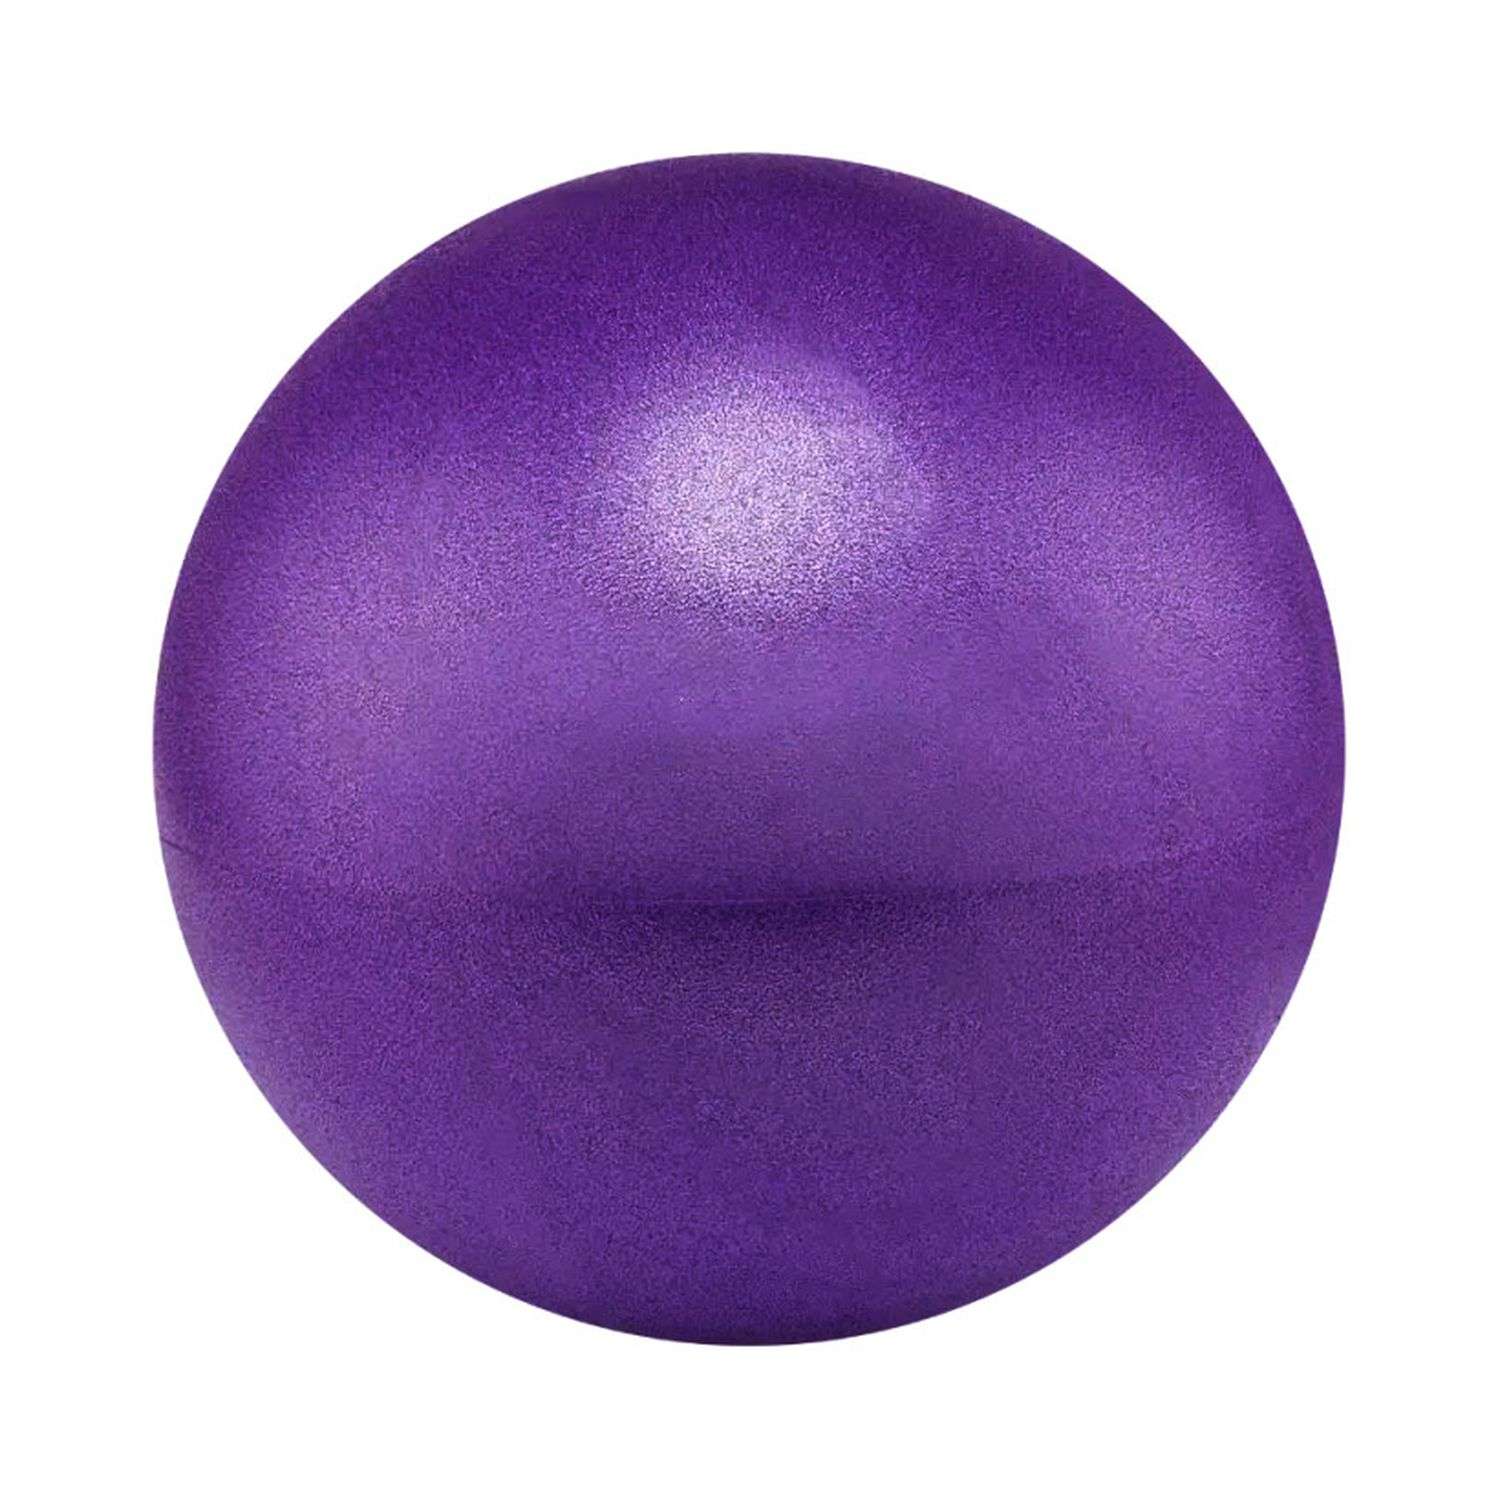 Мяч для йоги и пилатеса Beroma с антивзрывным эффектом 25 см фиолетовый - фото 1